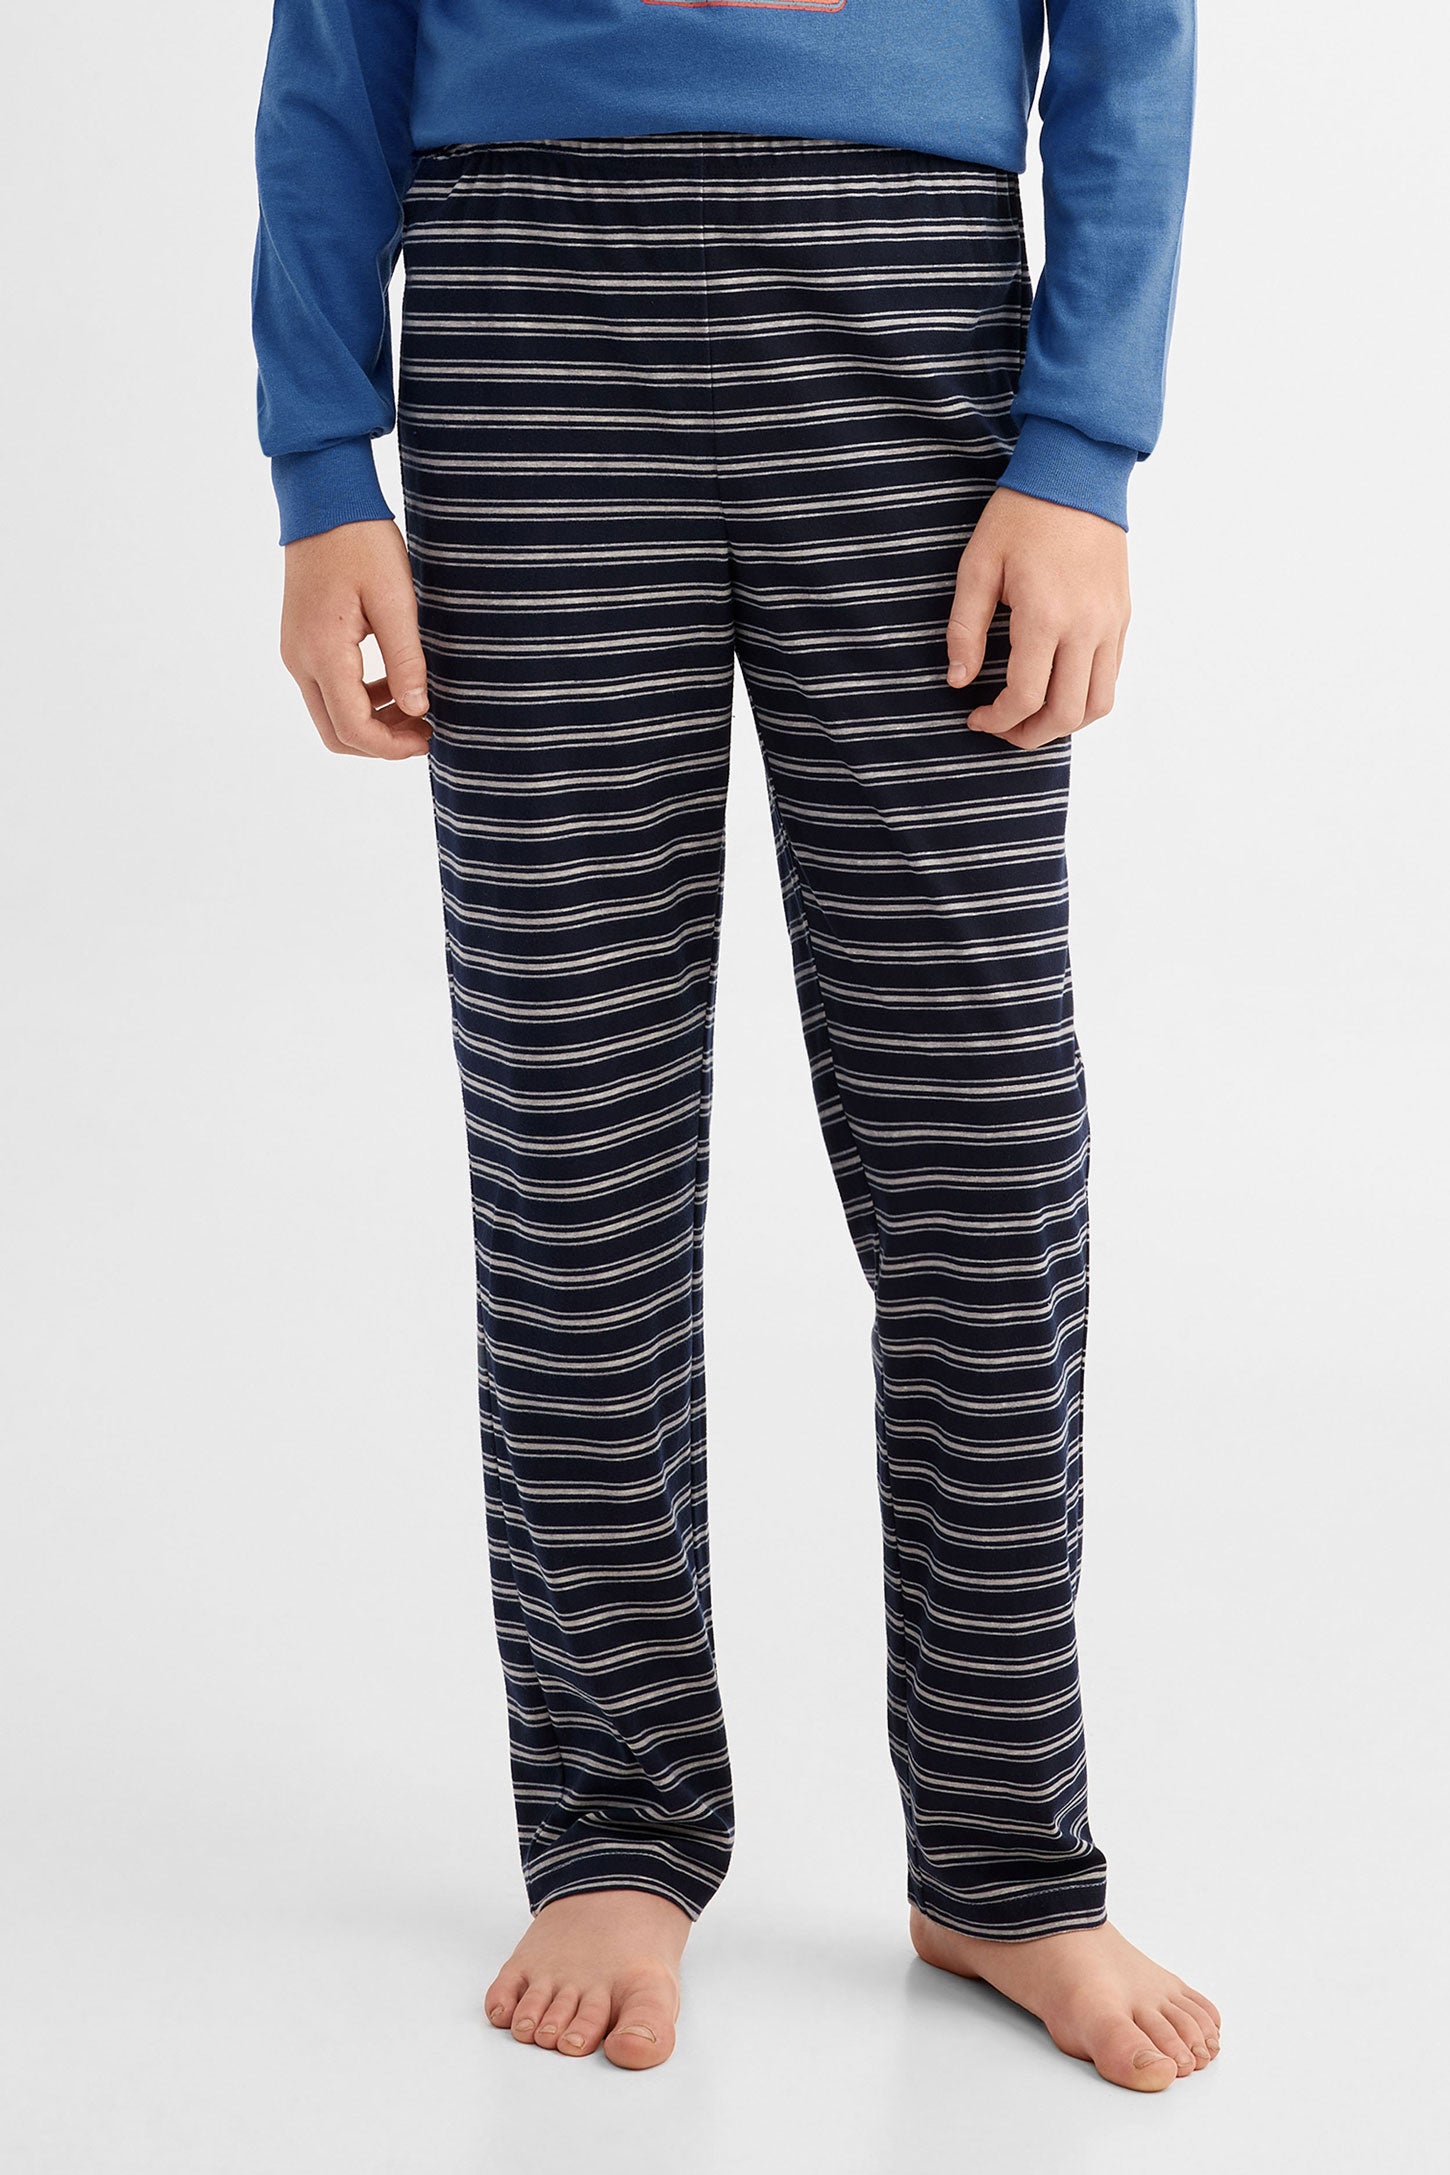 Pantalon pyjama - Ado garçon && MARIN/MULTI